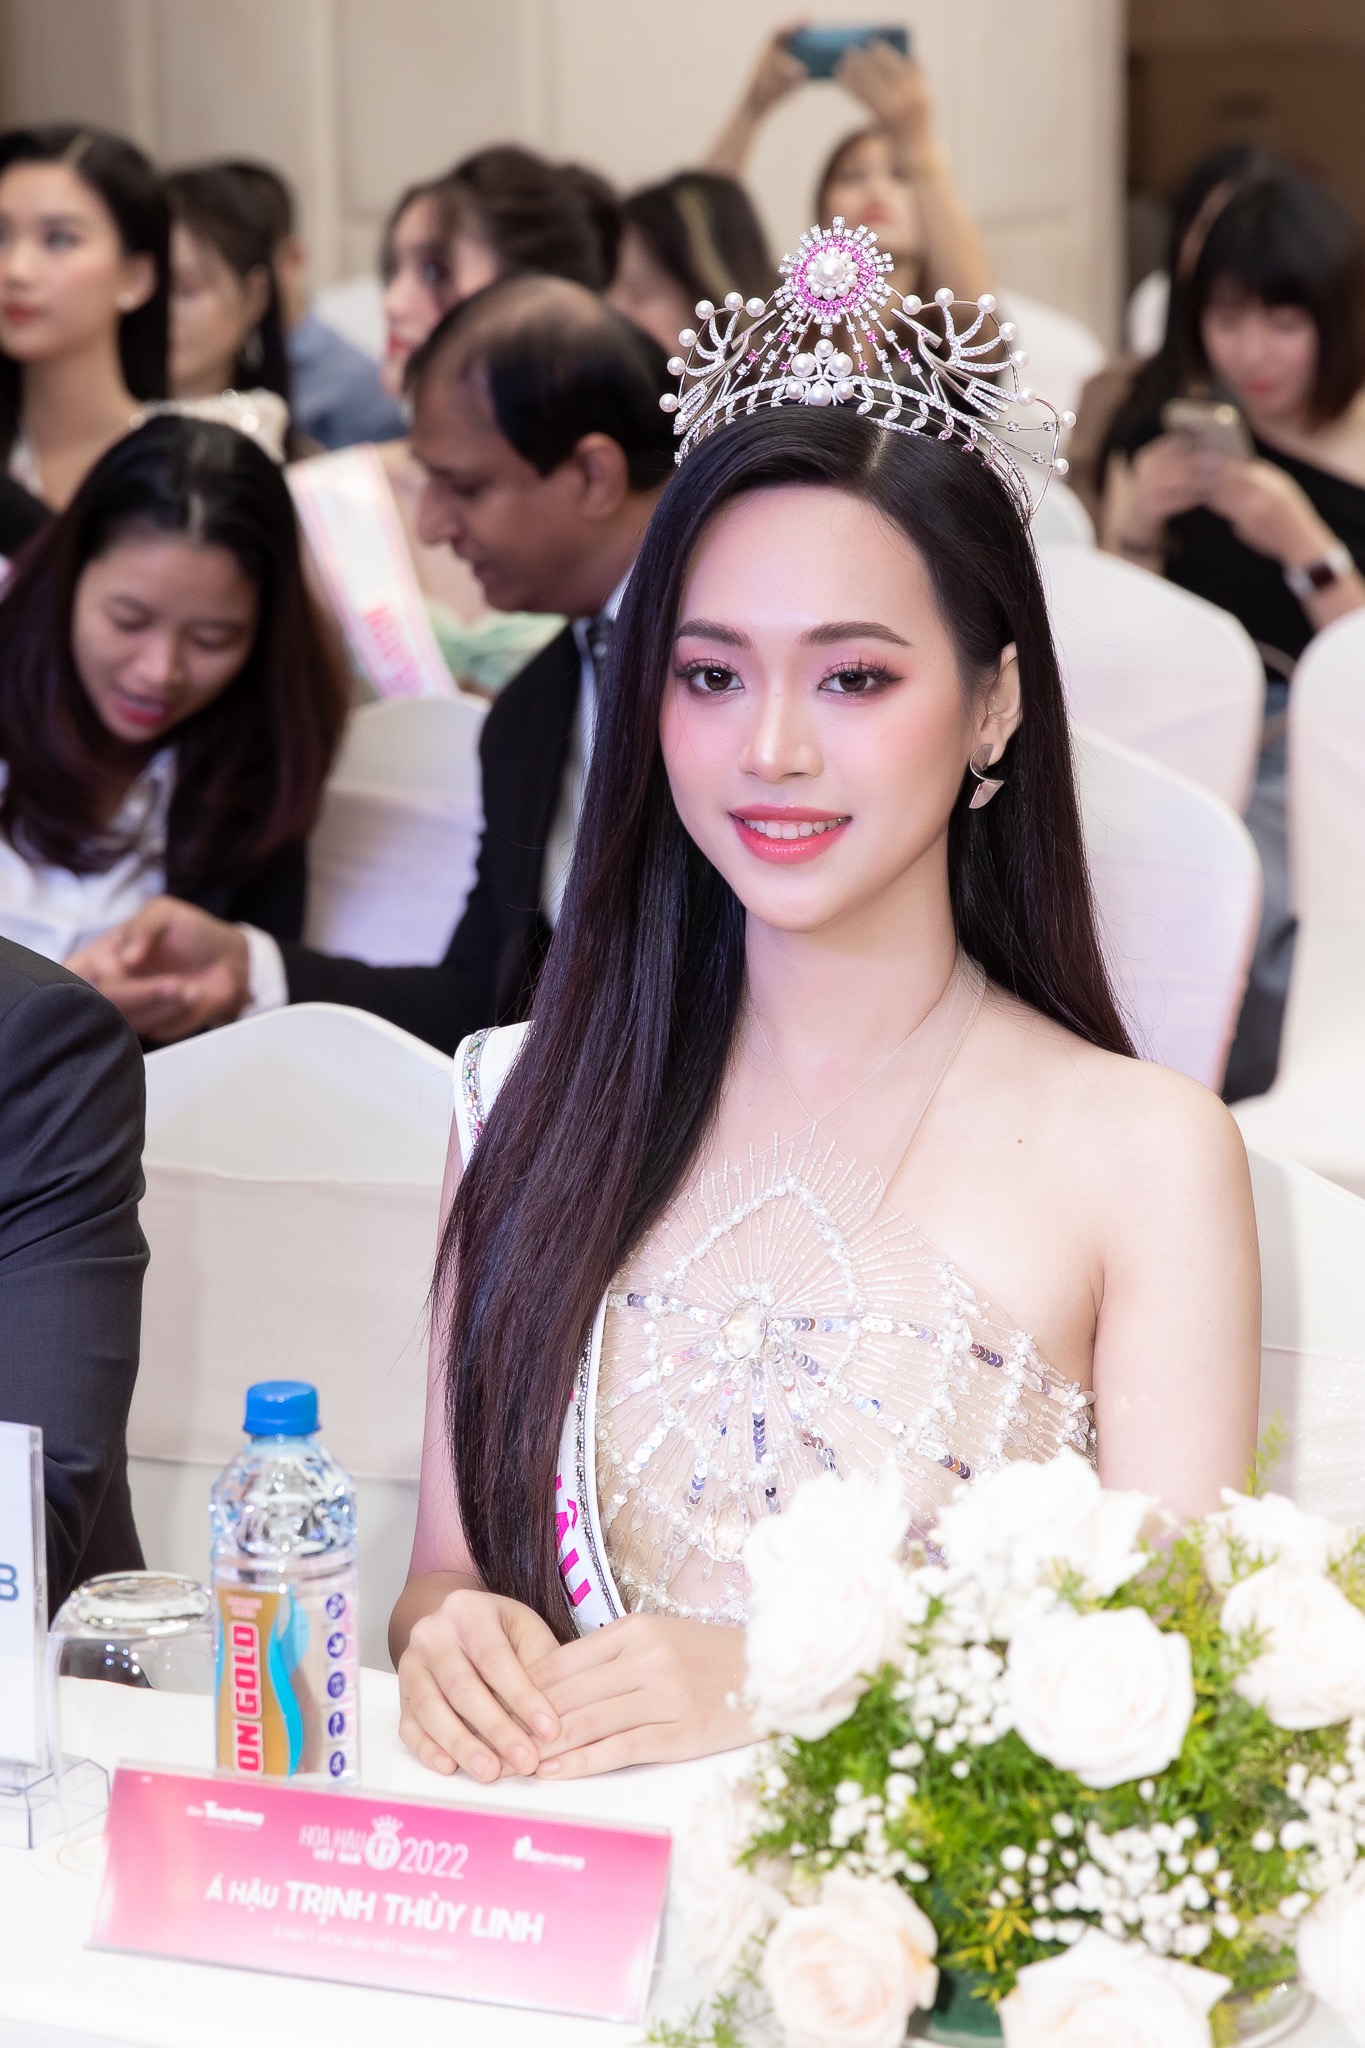 Họp báo sau đăng quang của Top 3 Hoa hậu Việt Nam: Á hậu 1 lên tiếng khi bị so sánh, 1 người đẹp có hành động gây tranh cãi - Ảnh 5.